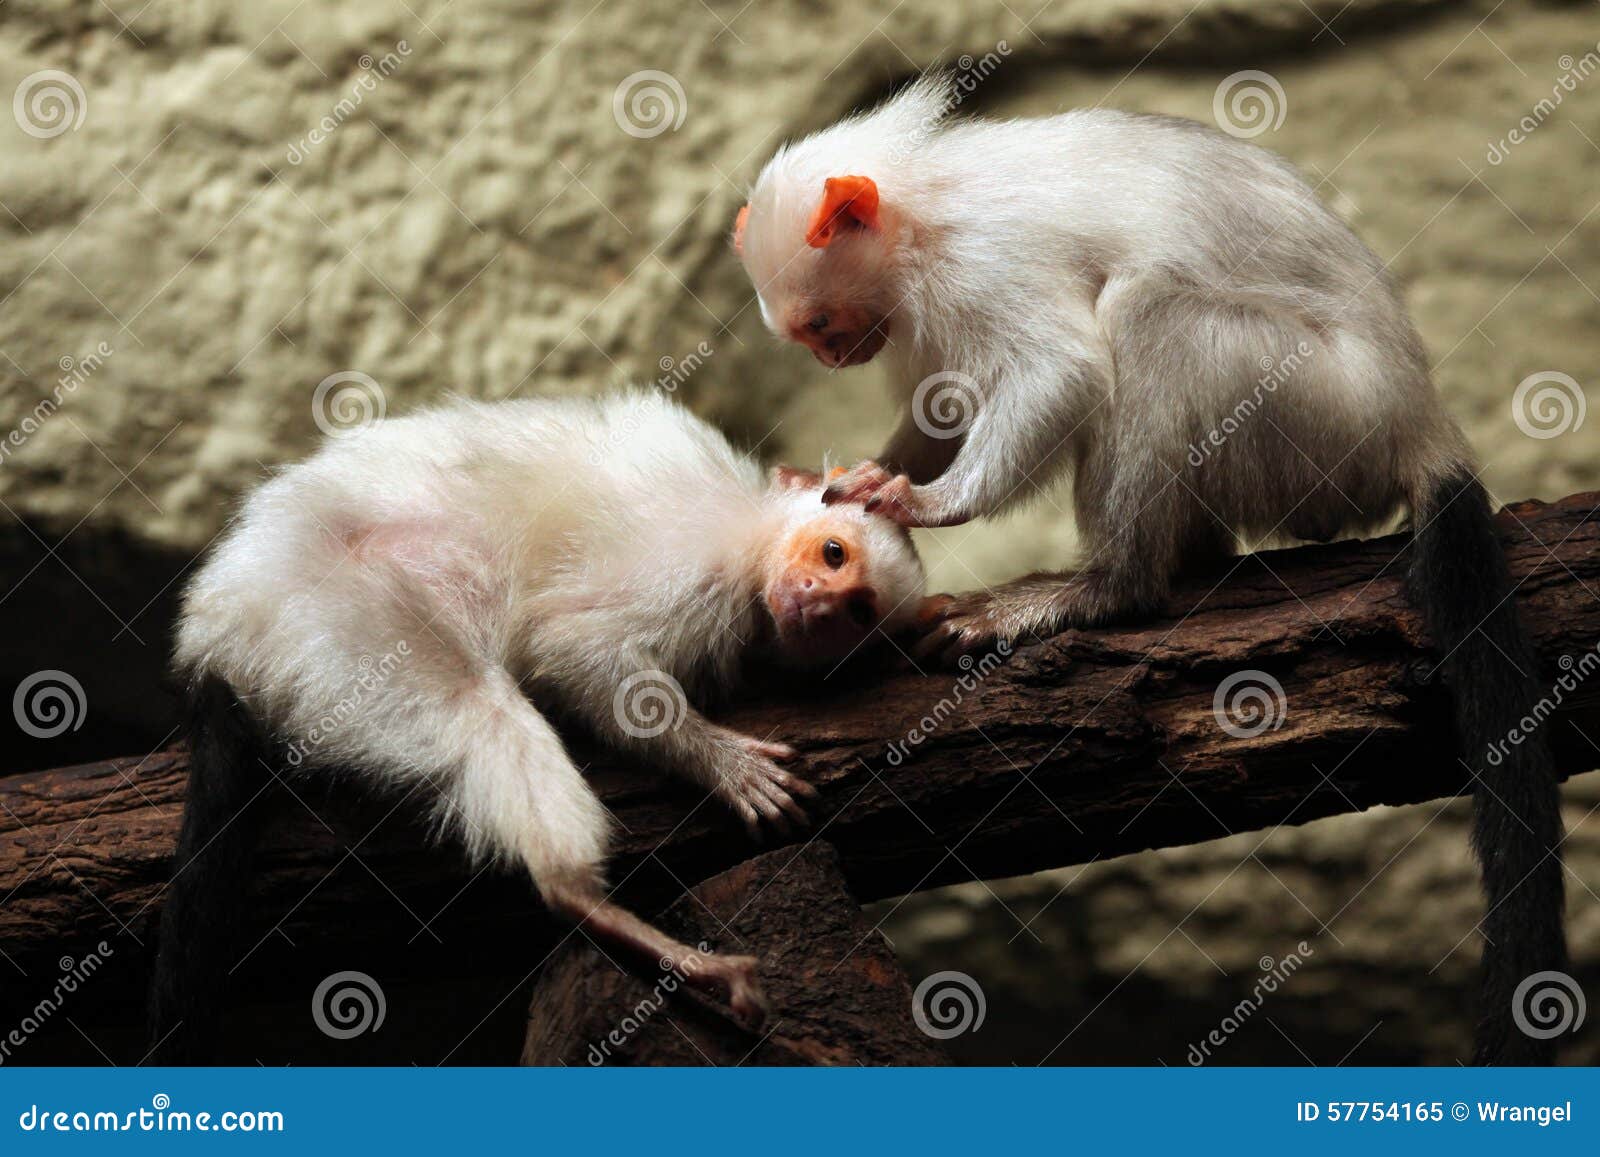 silvery marmoset (mico argentatus).